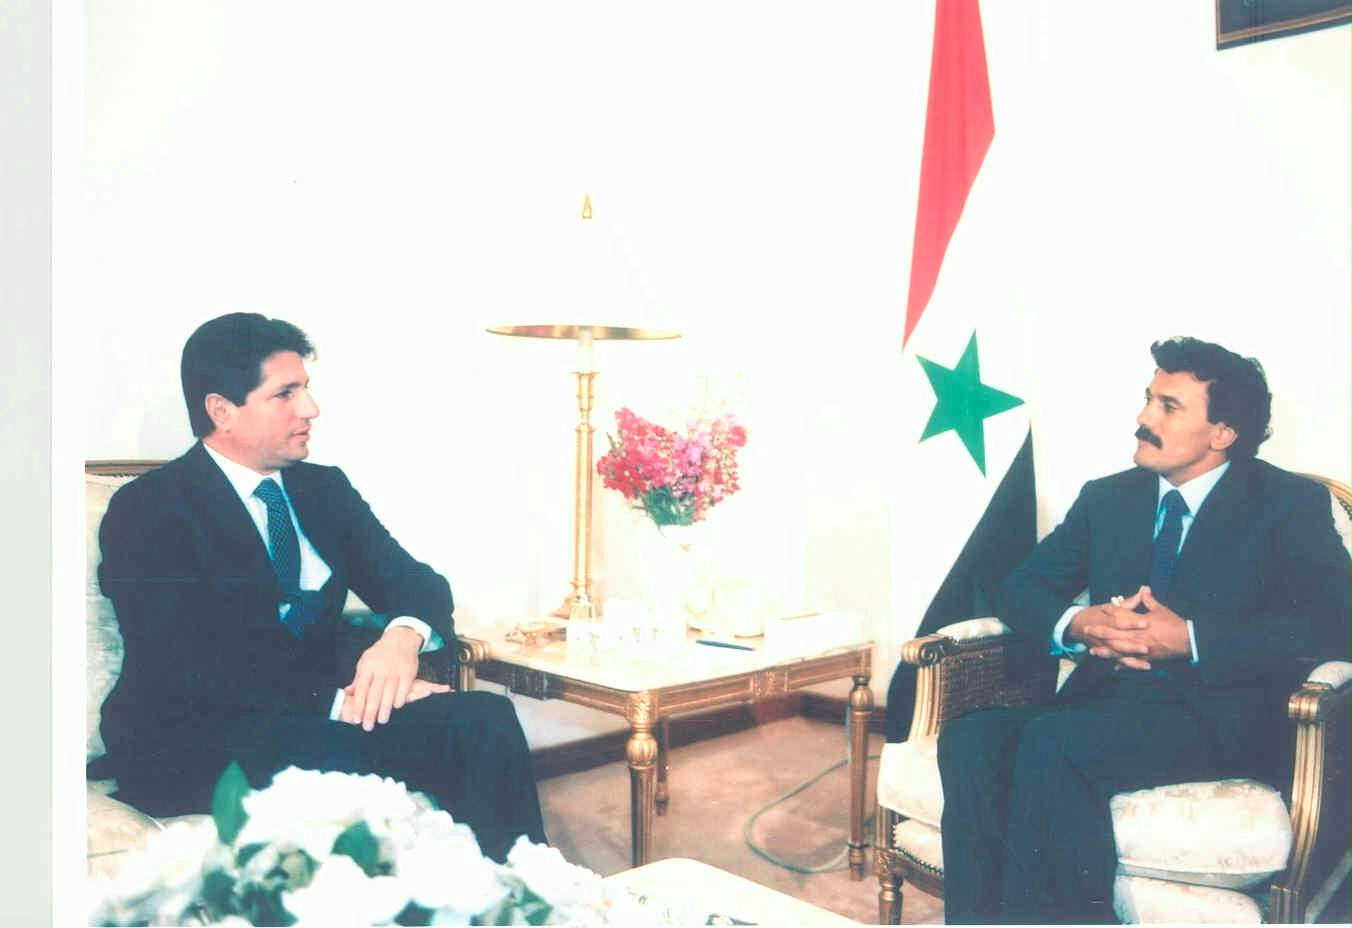 زيارة أمين الجميل رئيس جمهورية لبنان 13-02-1988م